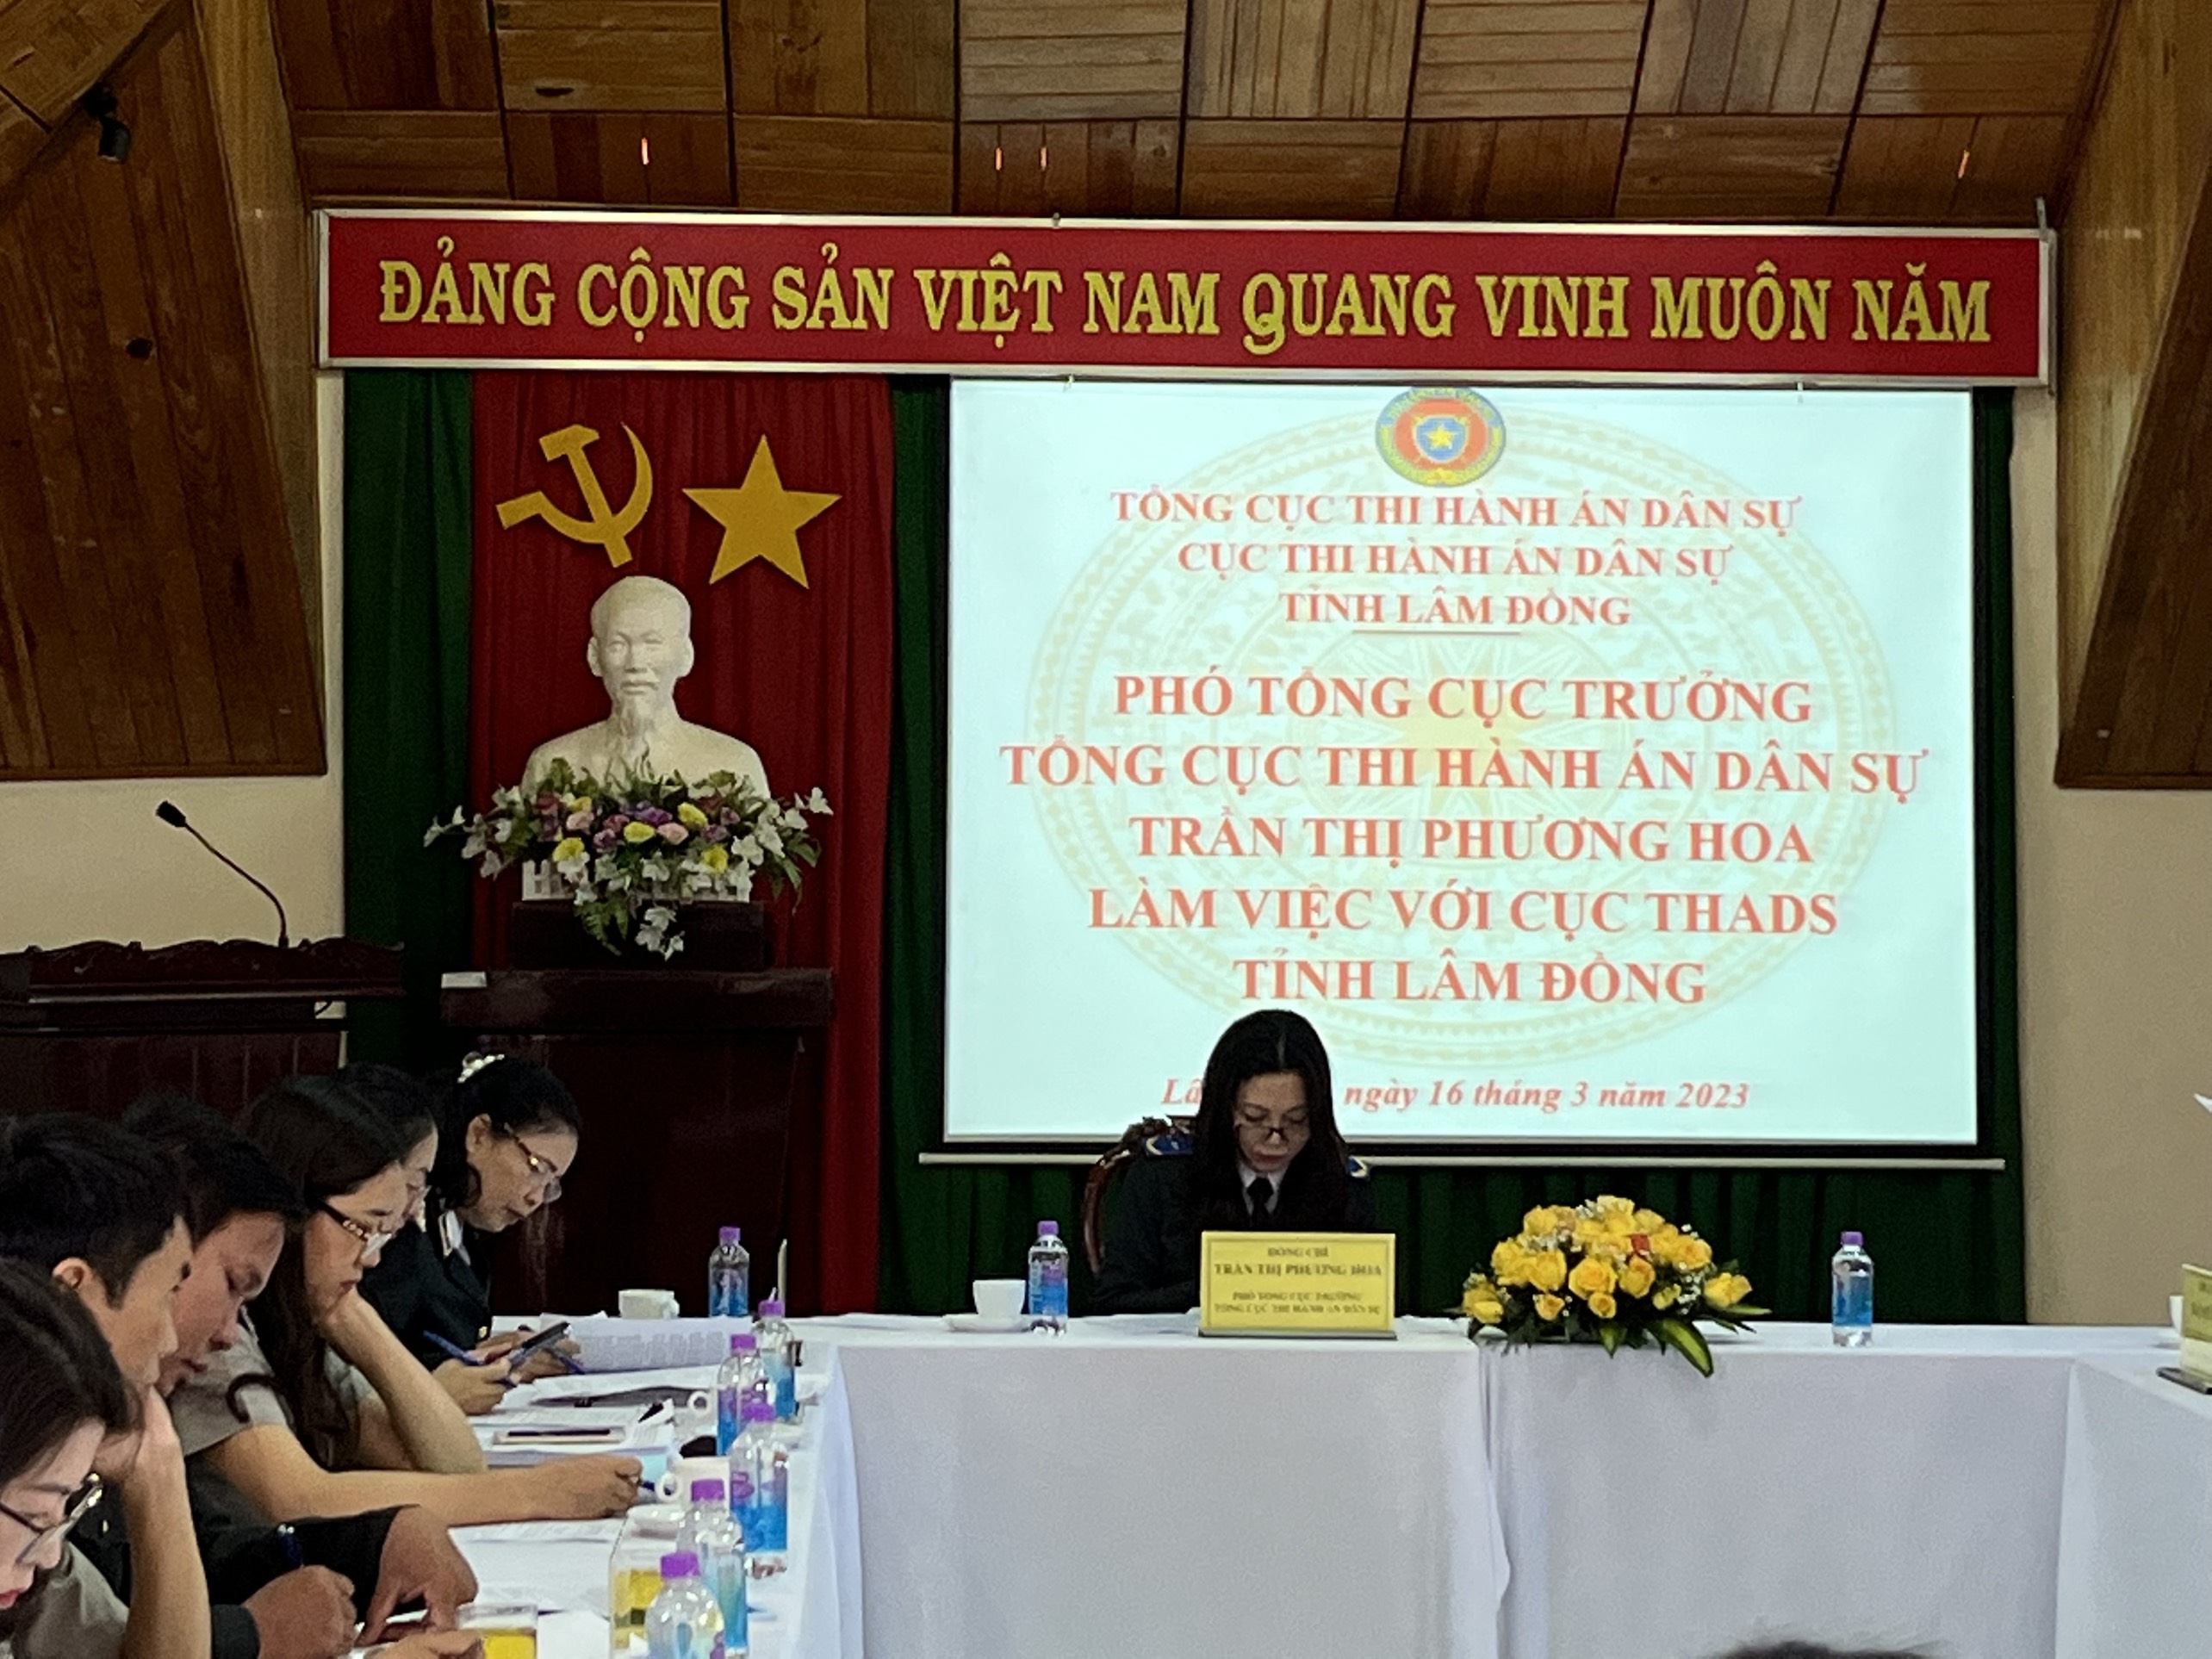 Tổng cục Thi hành án dân sự đôn đốc việc thực hiện chỉ tiêu, nhiệm vụ về thi hành án dân sự được giao năm 2023 tại tỉnh Lâm Đồng